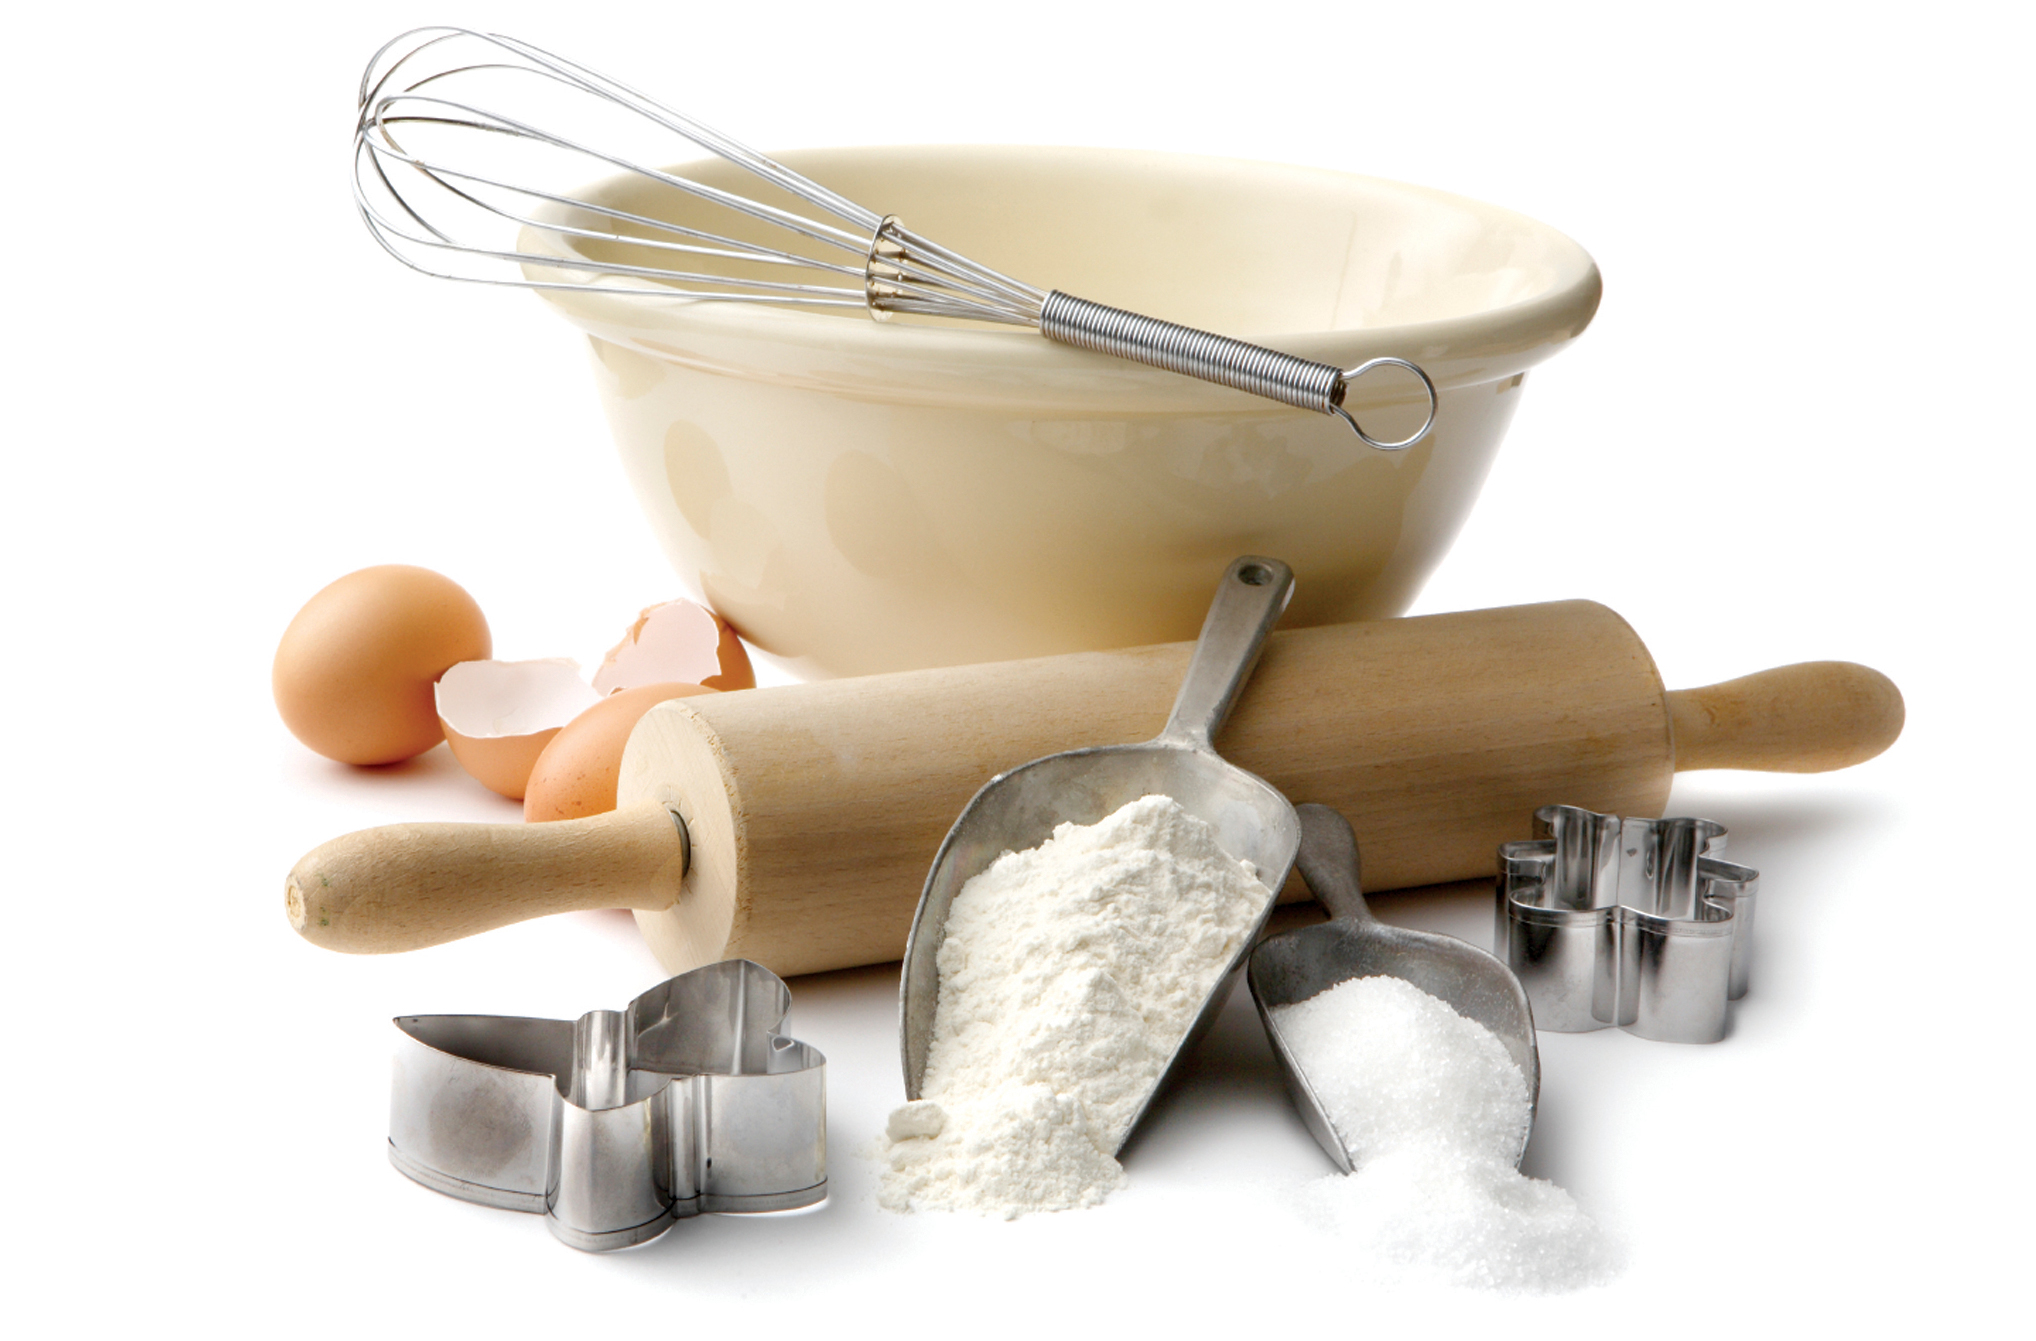 An assortment of baking supplies: a
        wisk, bowl, eggs, sugar, flour, etc.